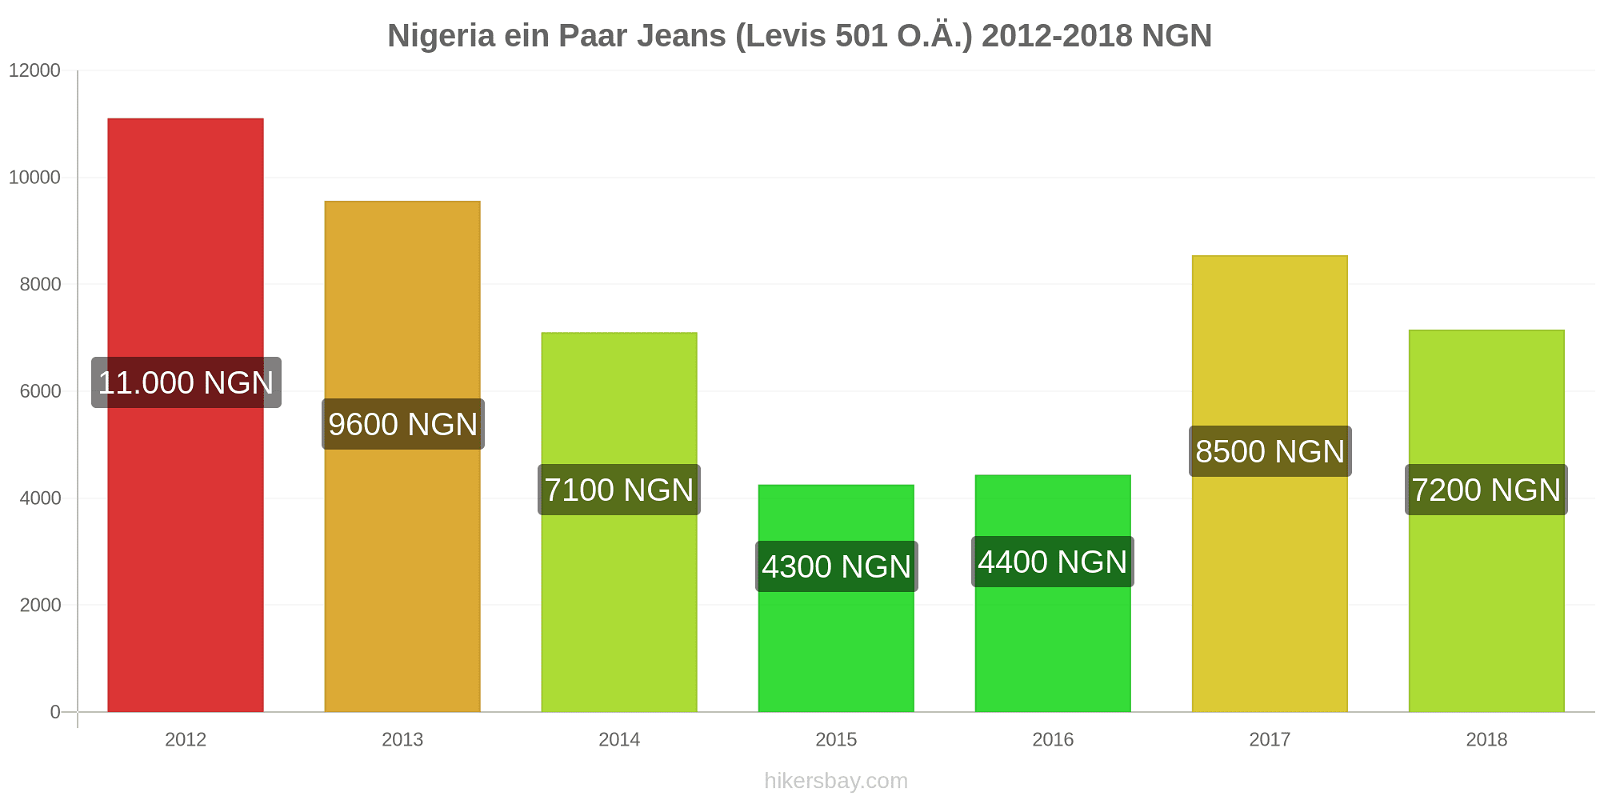 Nigeria Preisänderungen 1 Paar Jeans (Levis 501 oder ähnlich) hikersbay.com